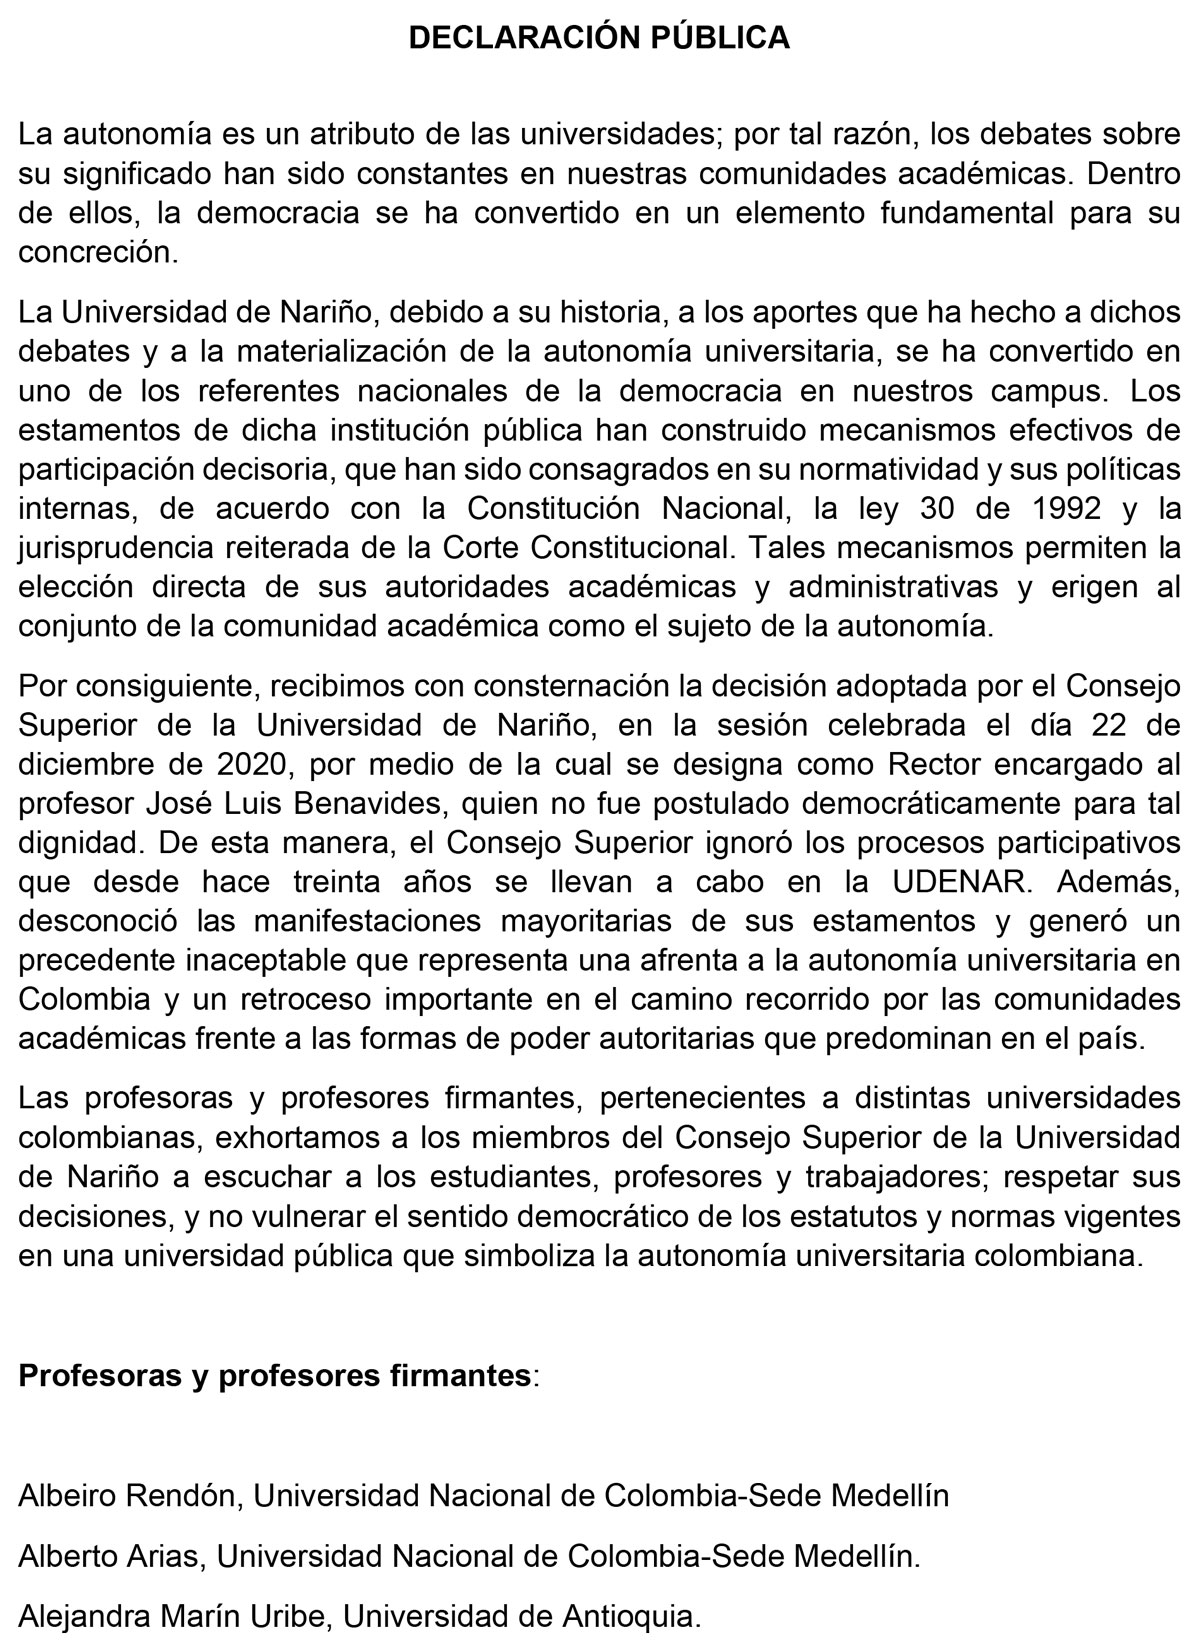 1-Declaración-Profes-Universidades-Universidad-de-Nariño-1